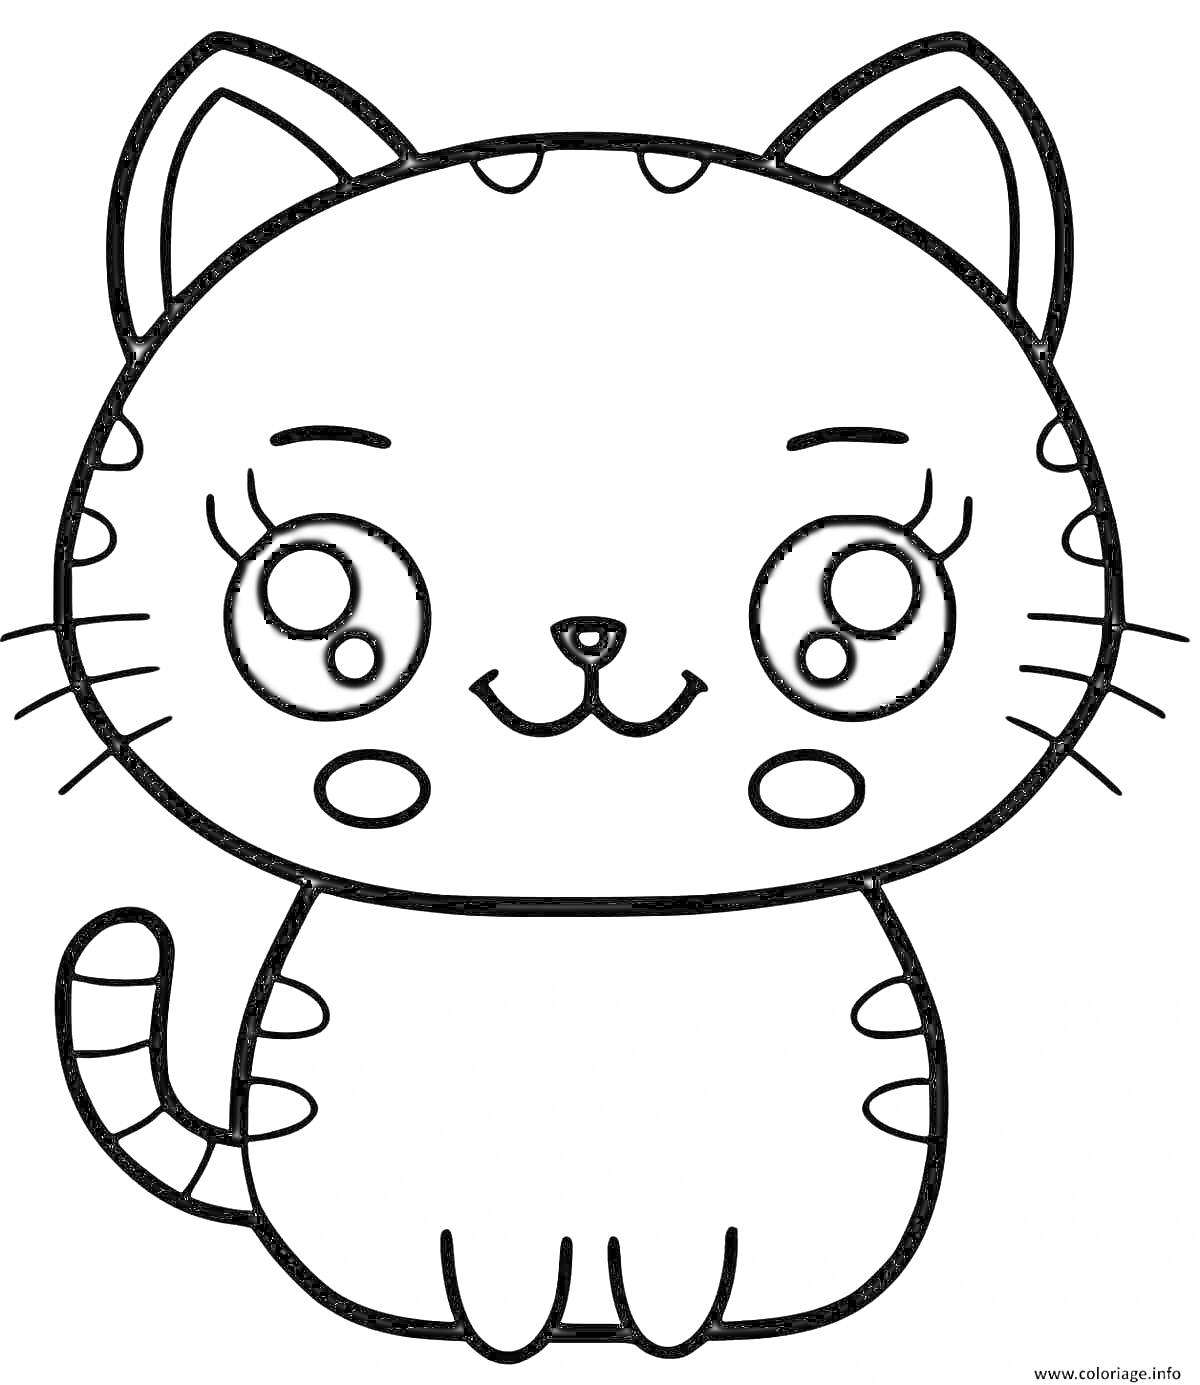 Раскраска Кавайный кот с большими глазами, полосками на хвосте и лапками